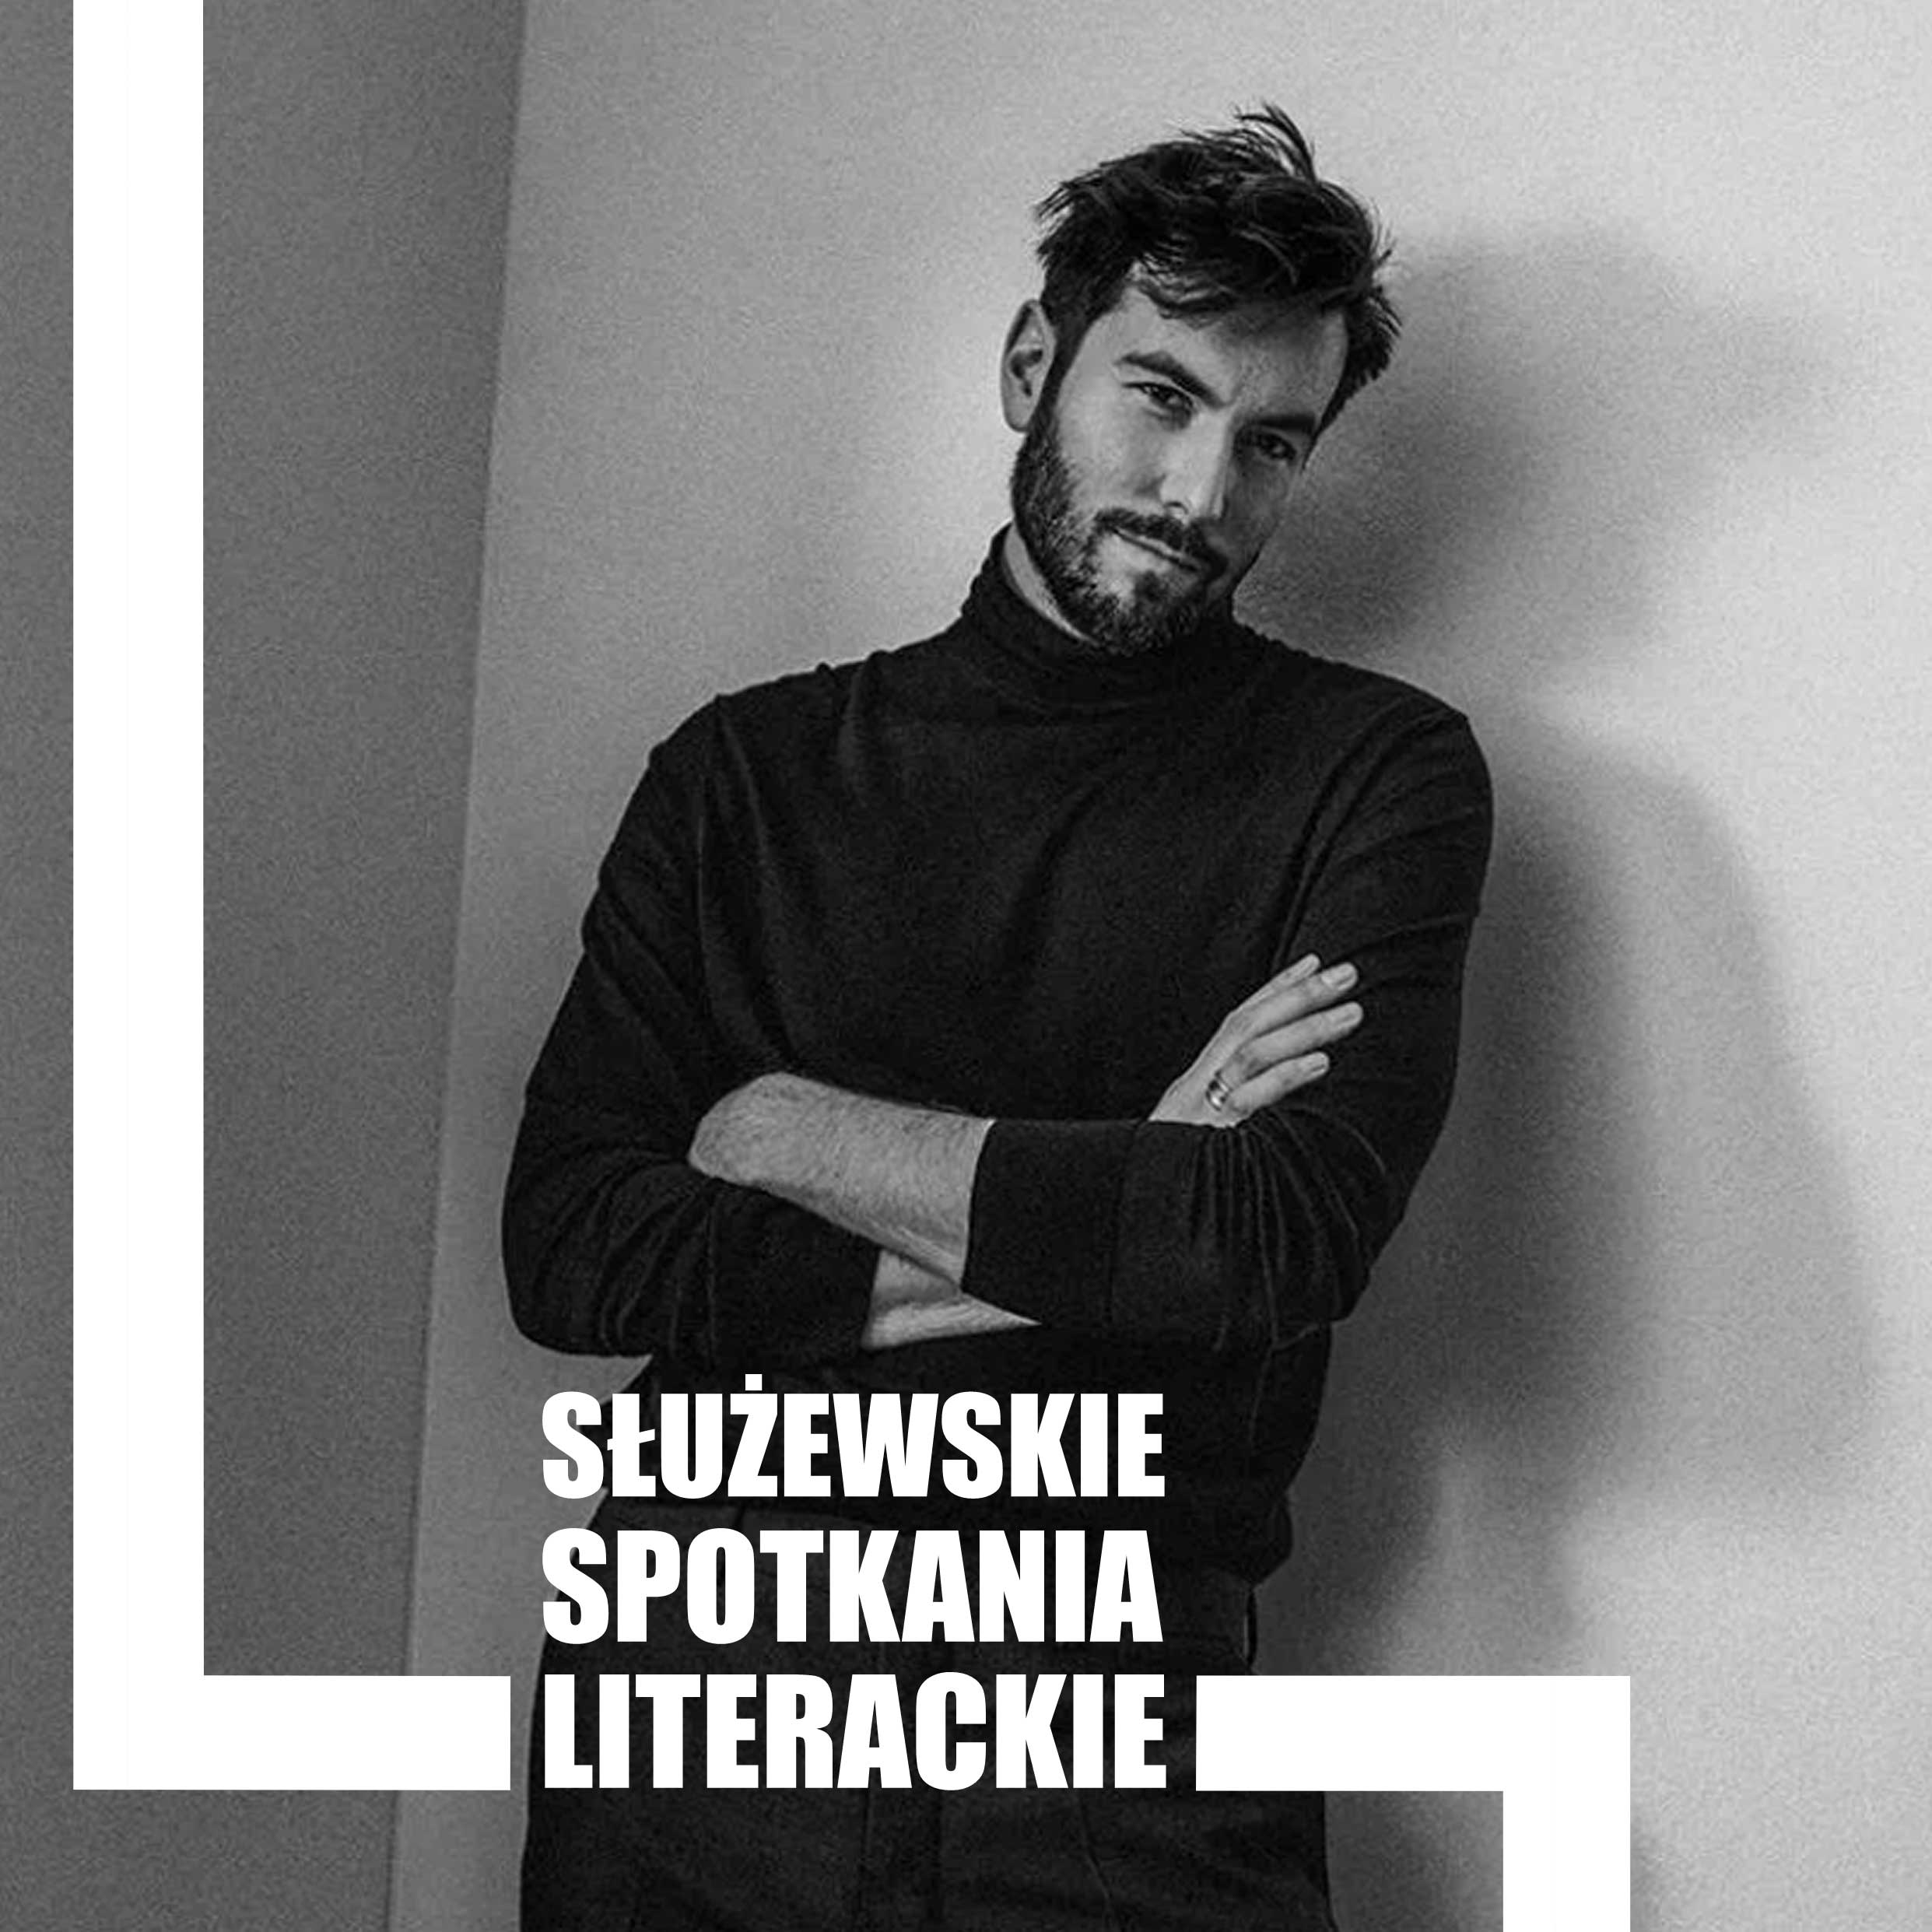 Tomasz Jędrowski (Fot. Jakub Pleśniarski dla Vogue Polska)